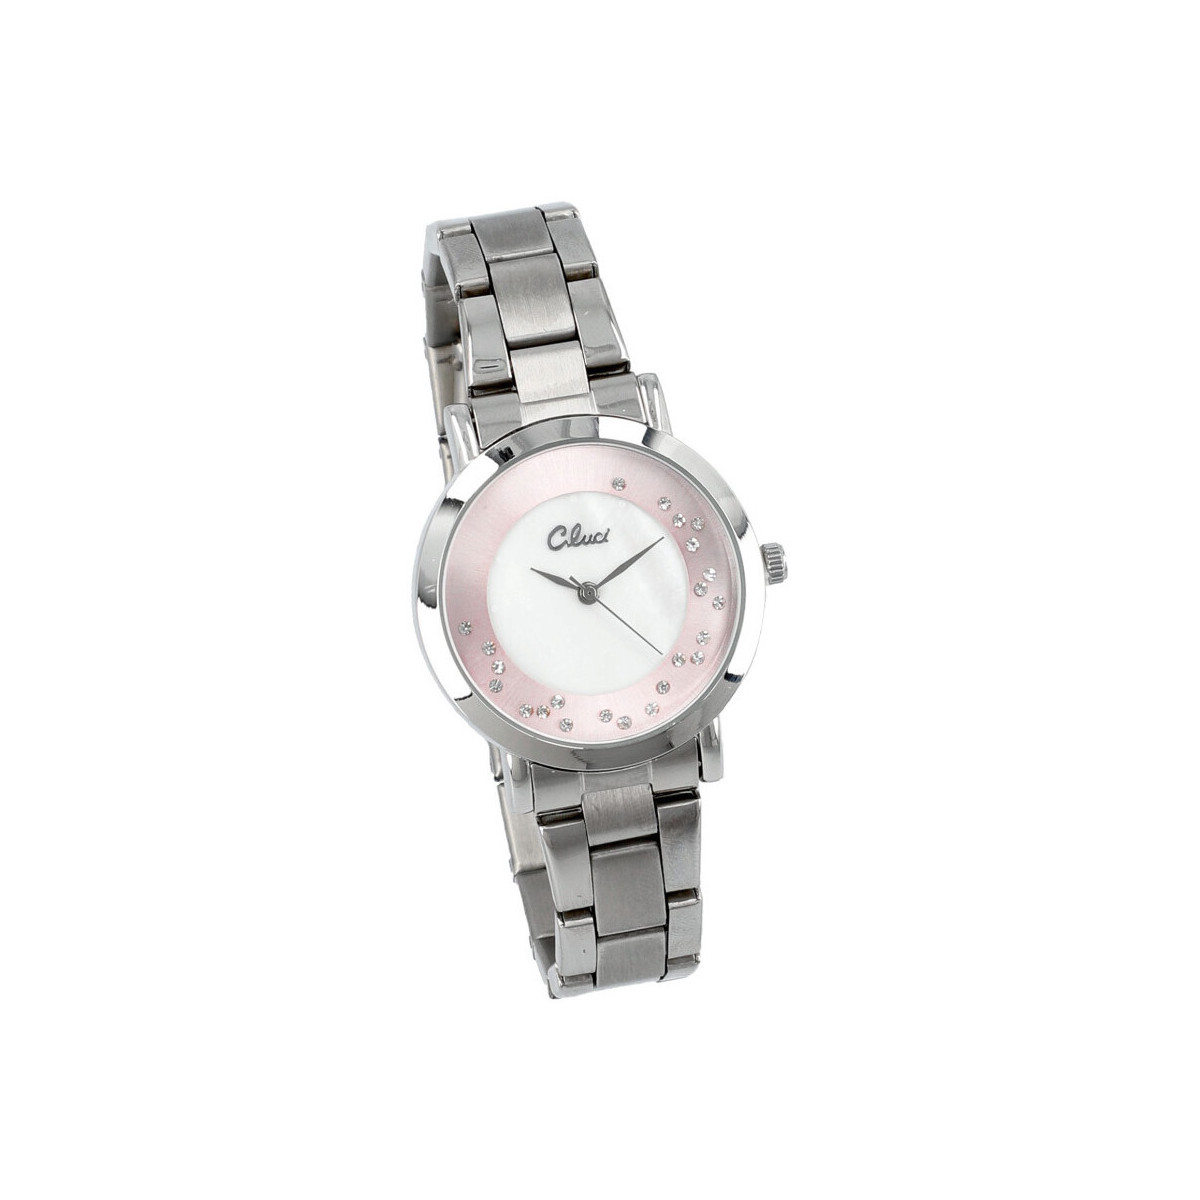 Hodinky & Bižuterie Ženy Hodinky Gluci Stříbrné náramkové dámské hodinky v krabičce  CC15231 